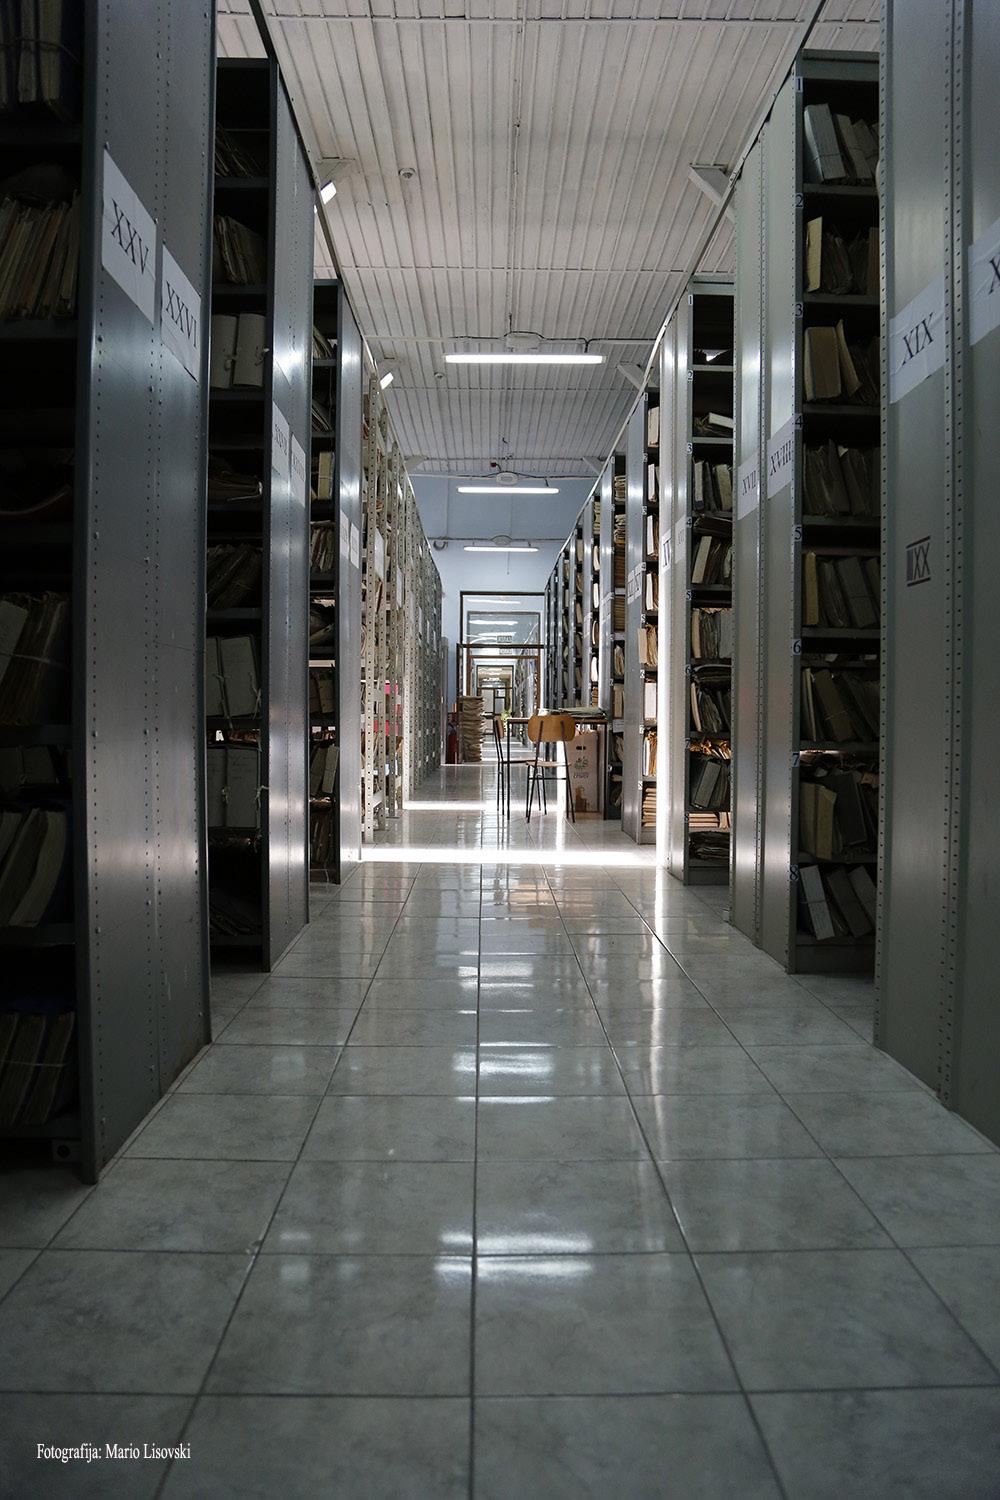 око 5000 дужних метара архивске грађе, која обухвата период од друге половине 18. до краја 20. века. Архивска библиотека има око 10.000 библиотечких јединица, који обухватају период од 1650. до 2016.